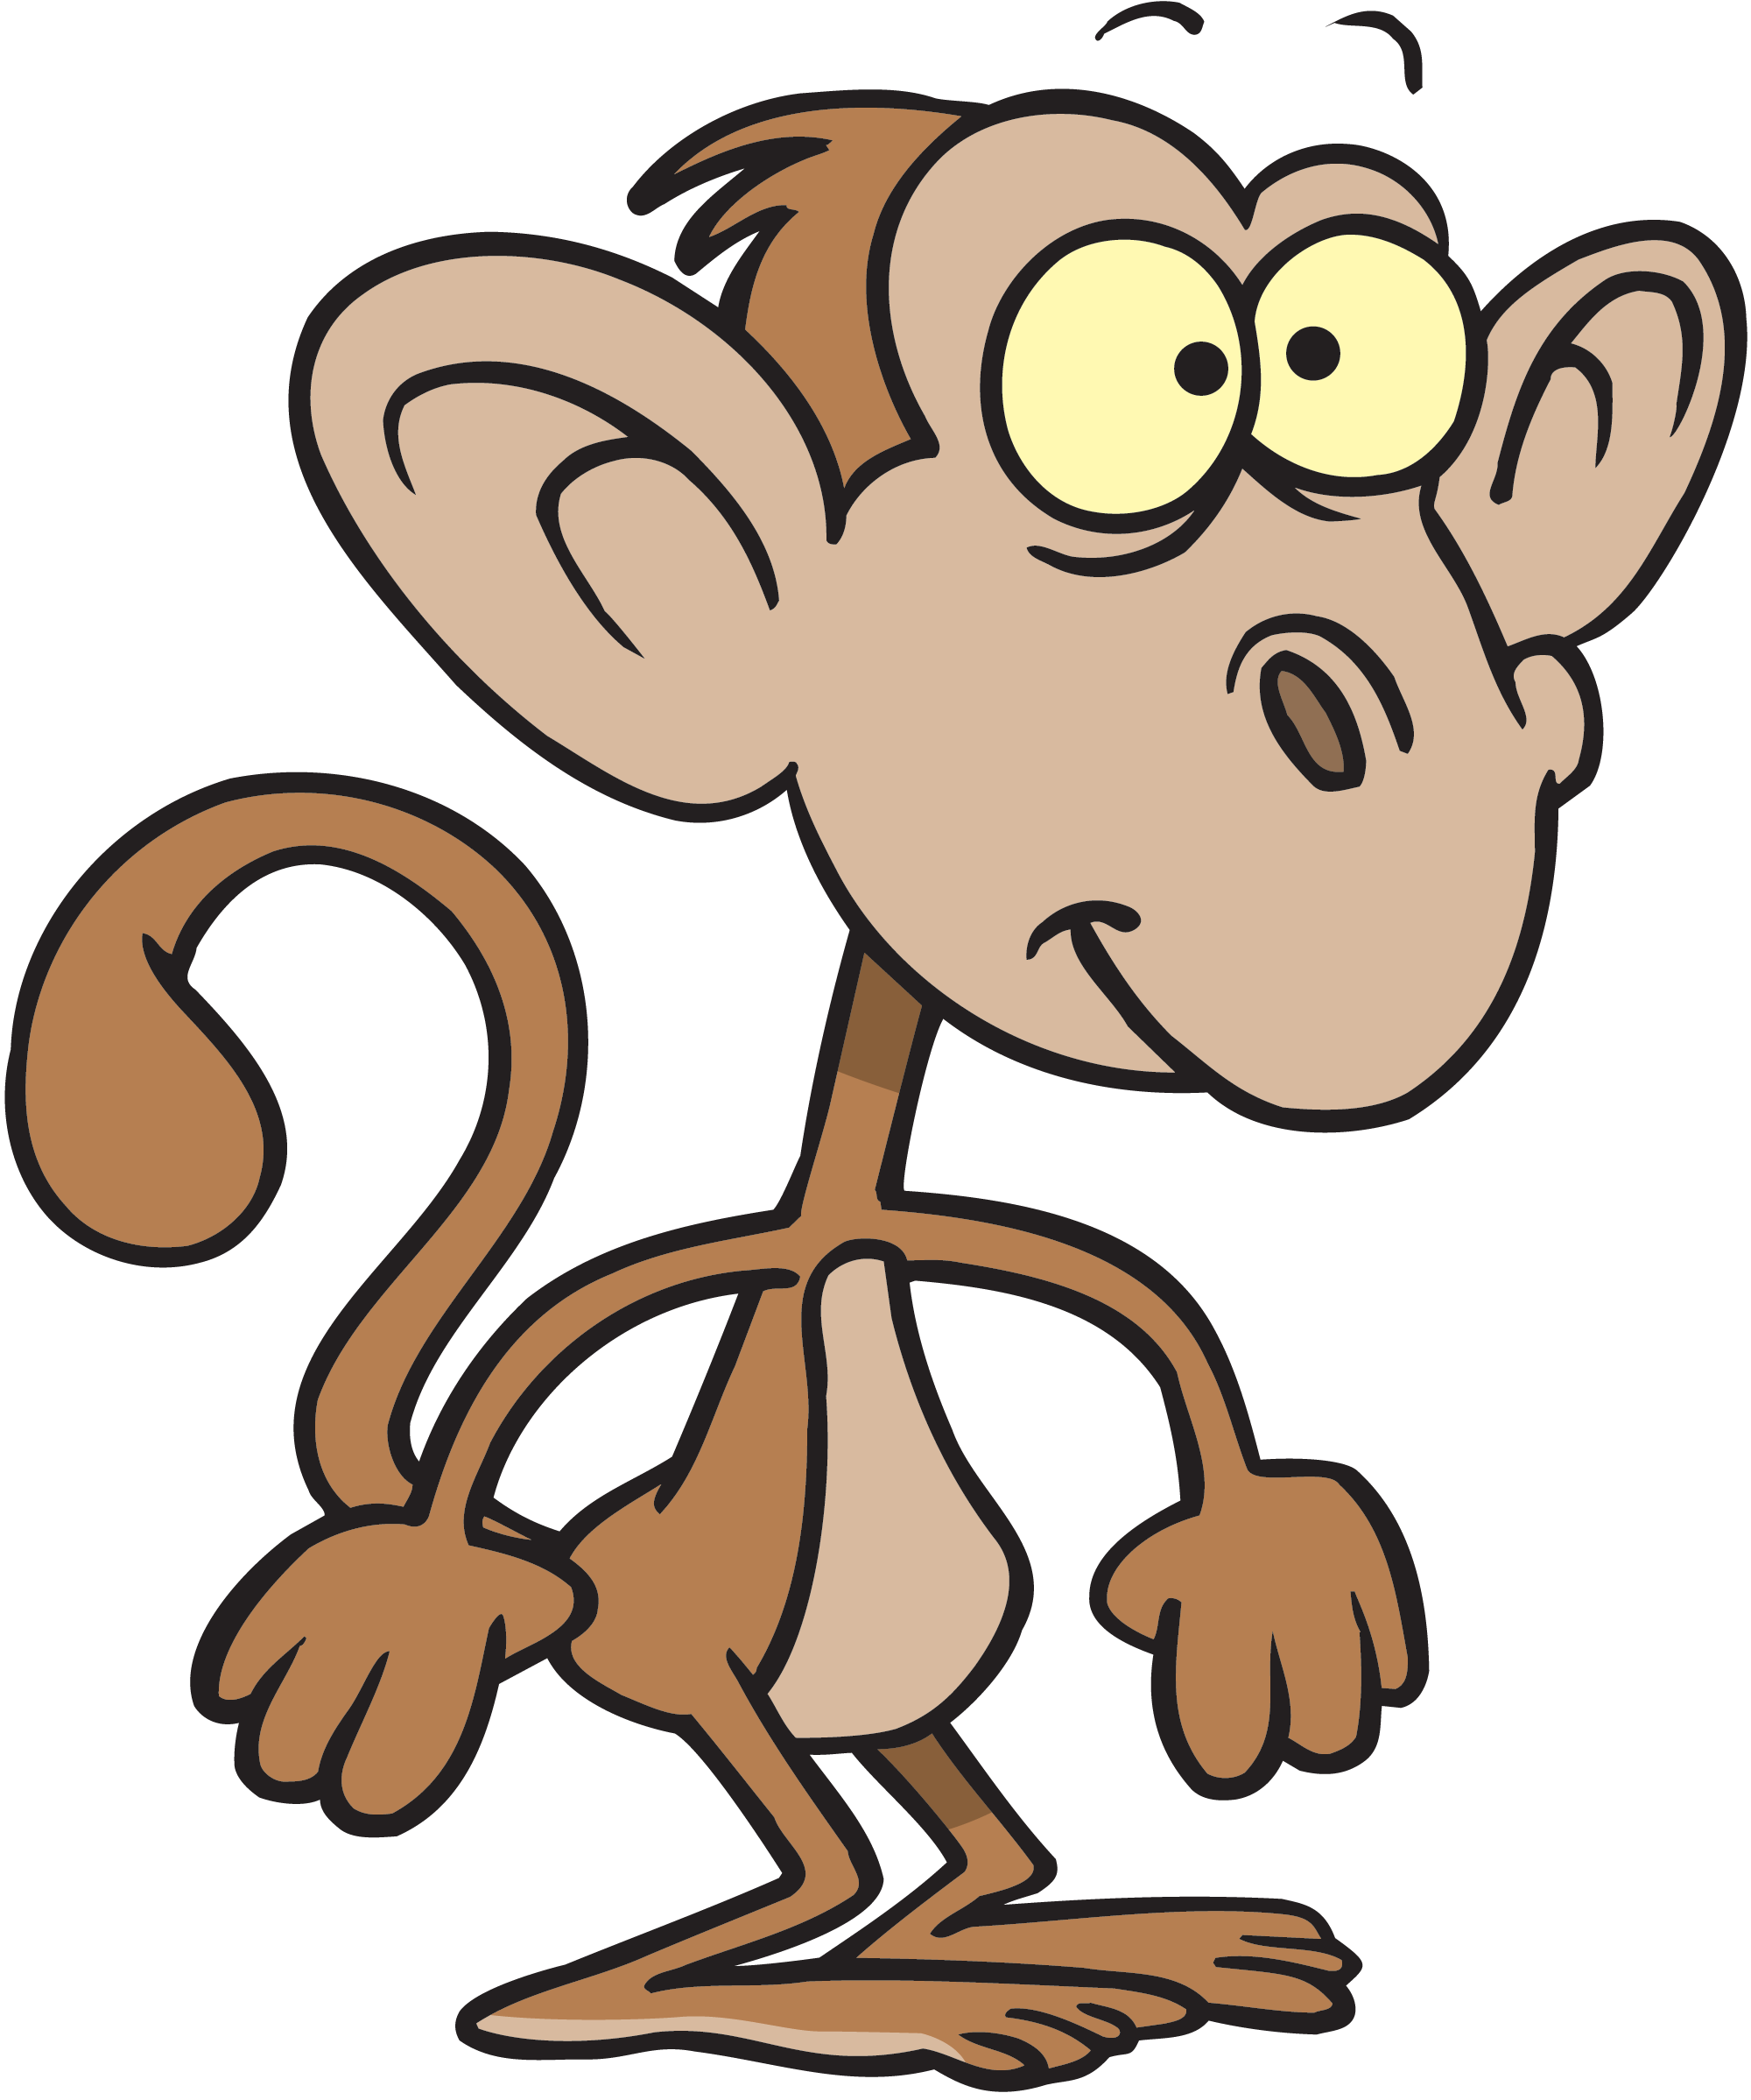 monkey animated clipart - photo #32